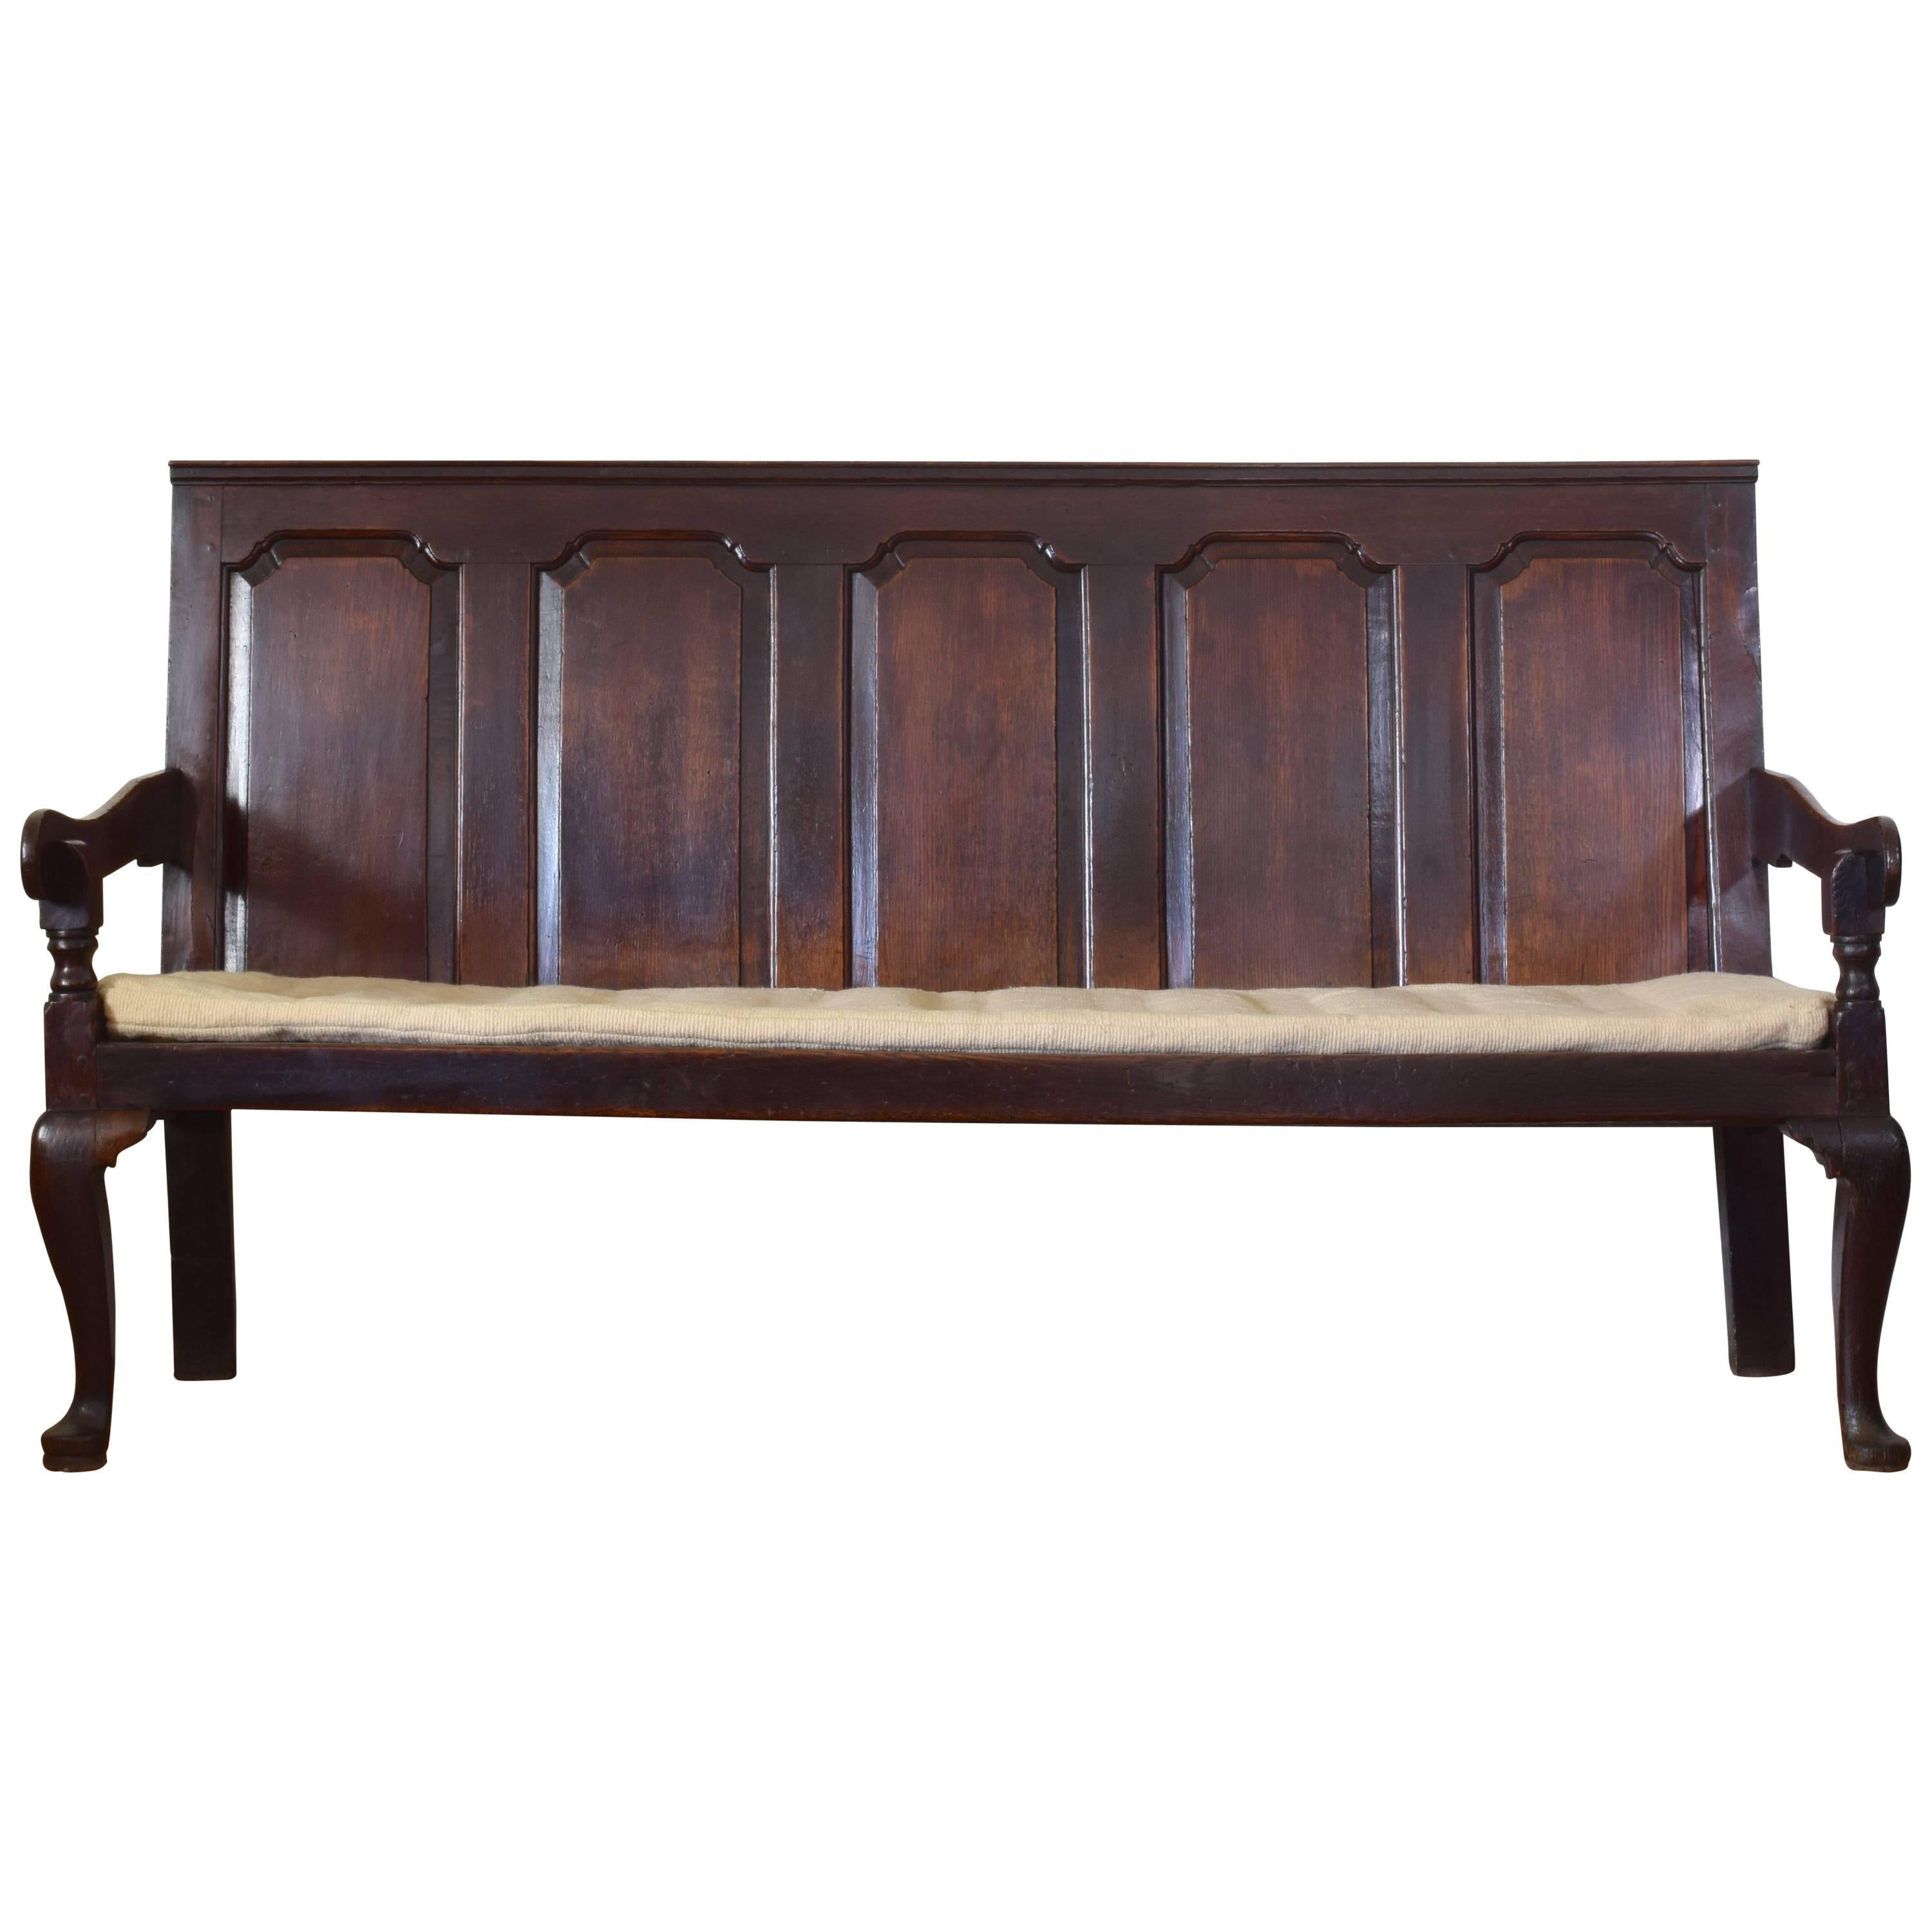 English Oak Paneled Back Bench, 18th Century